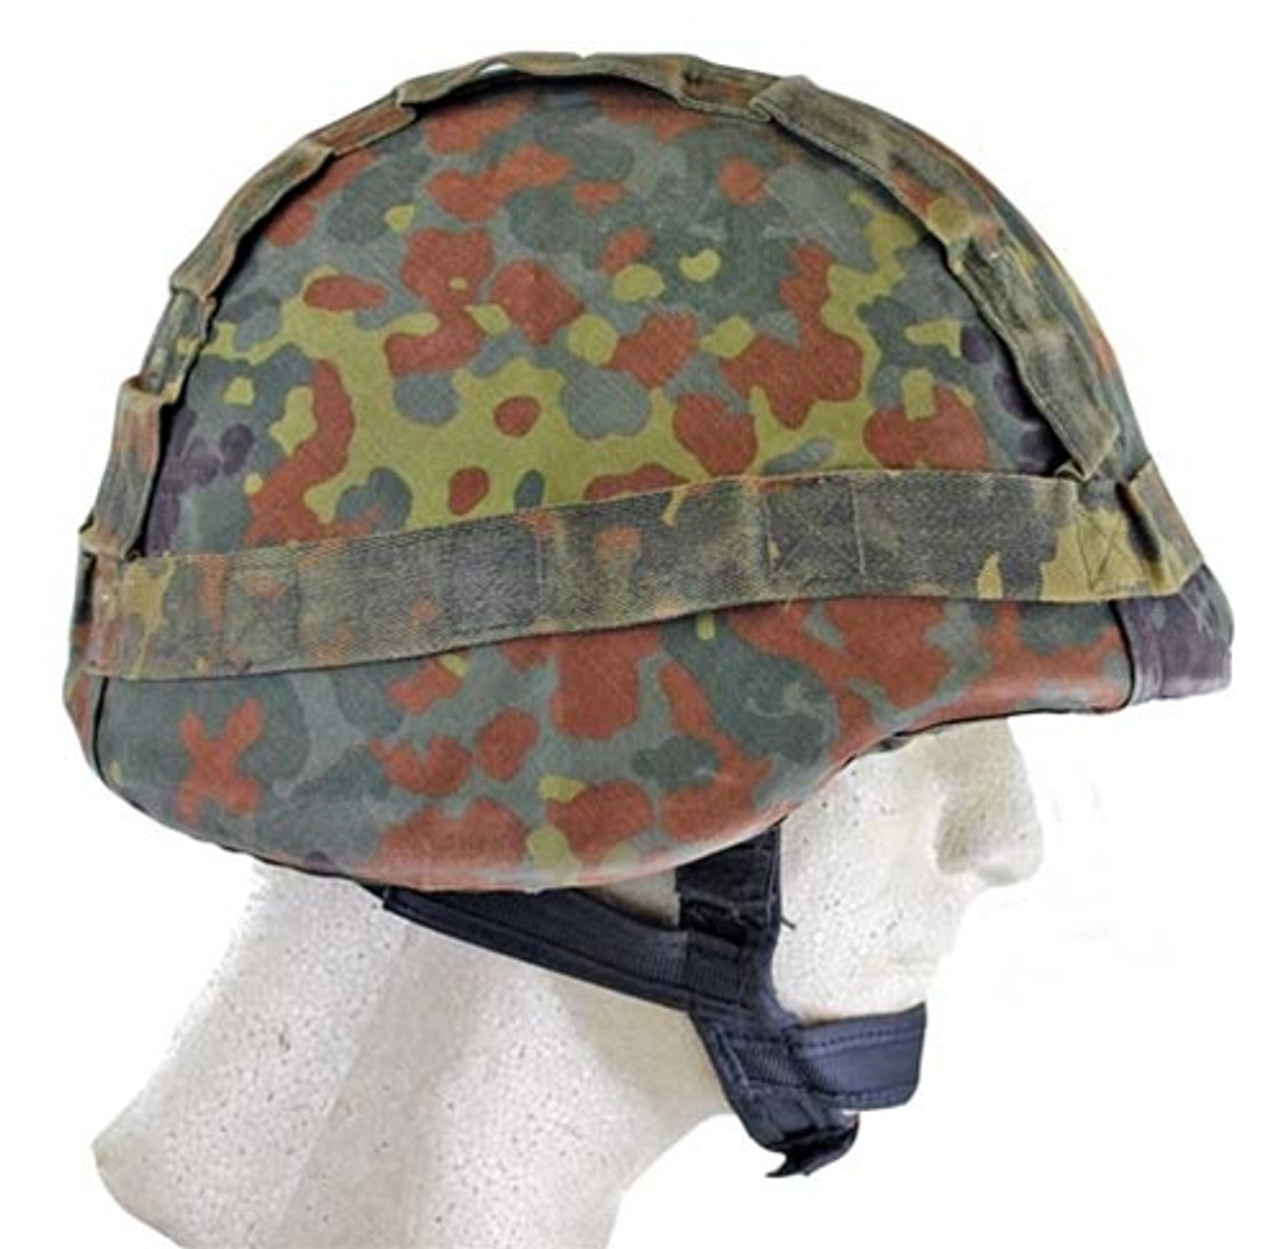 NATO Kevlar Helmet With Flecktarn Cover from Hessen Antique